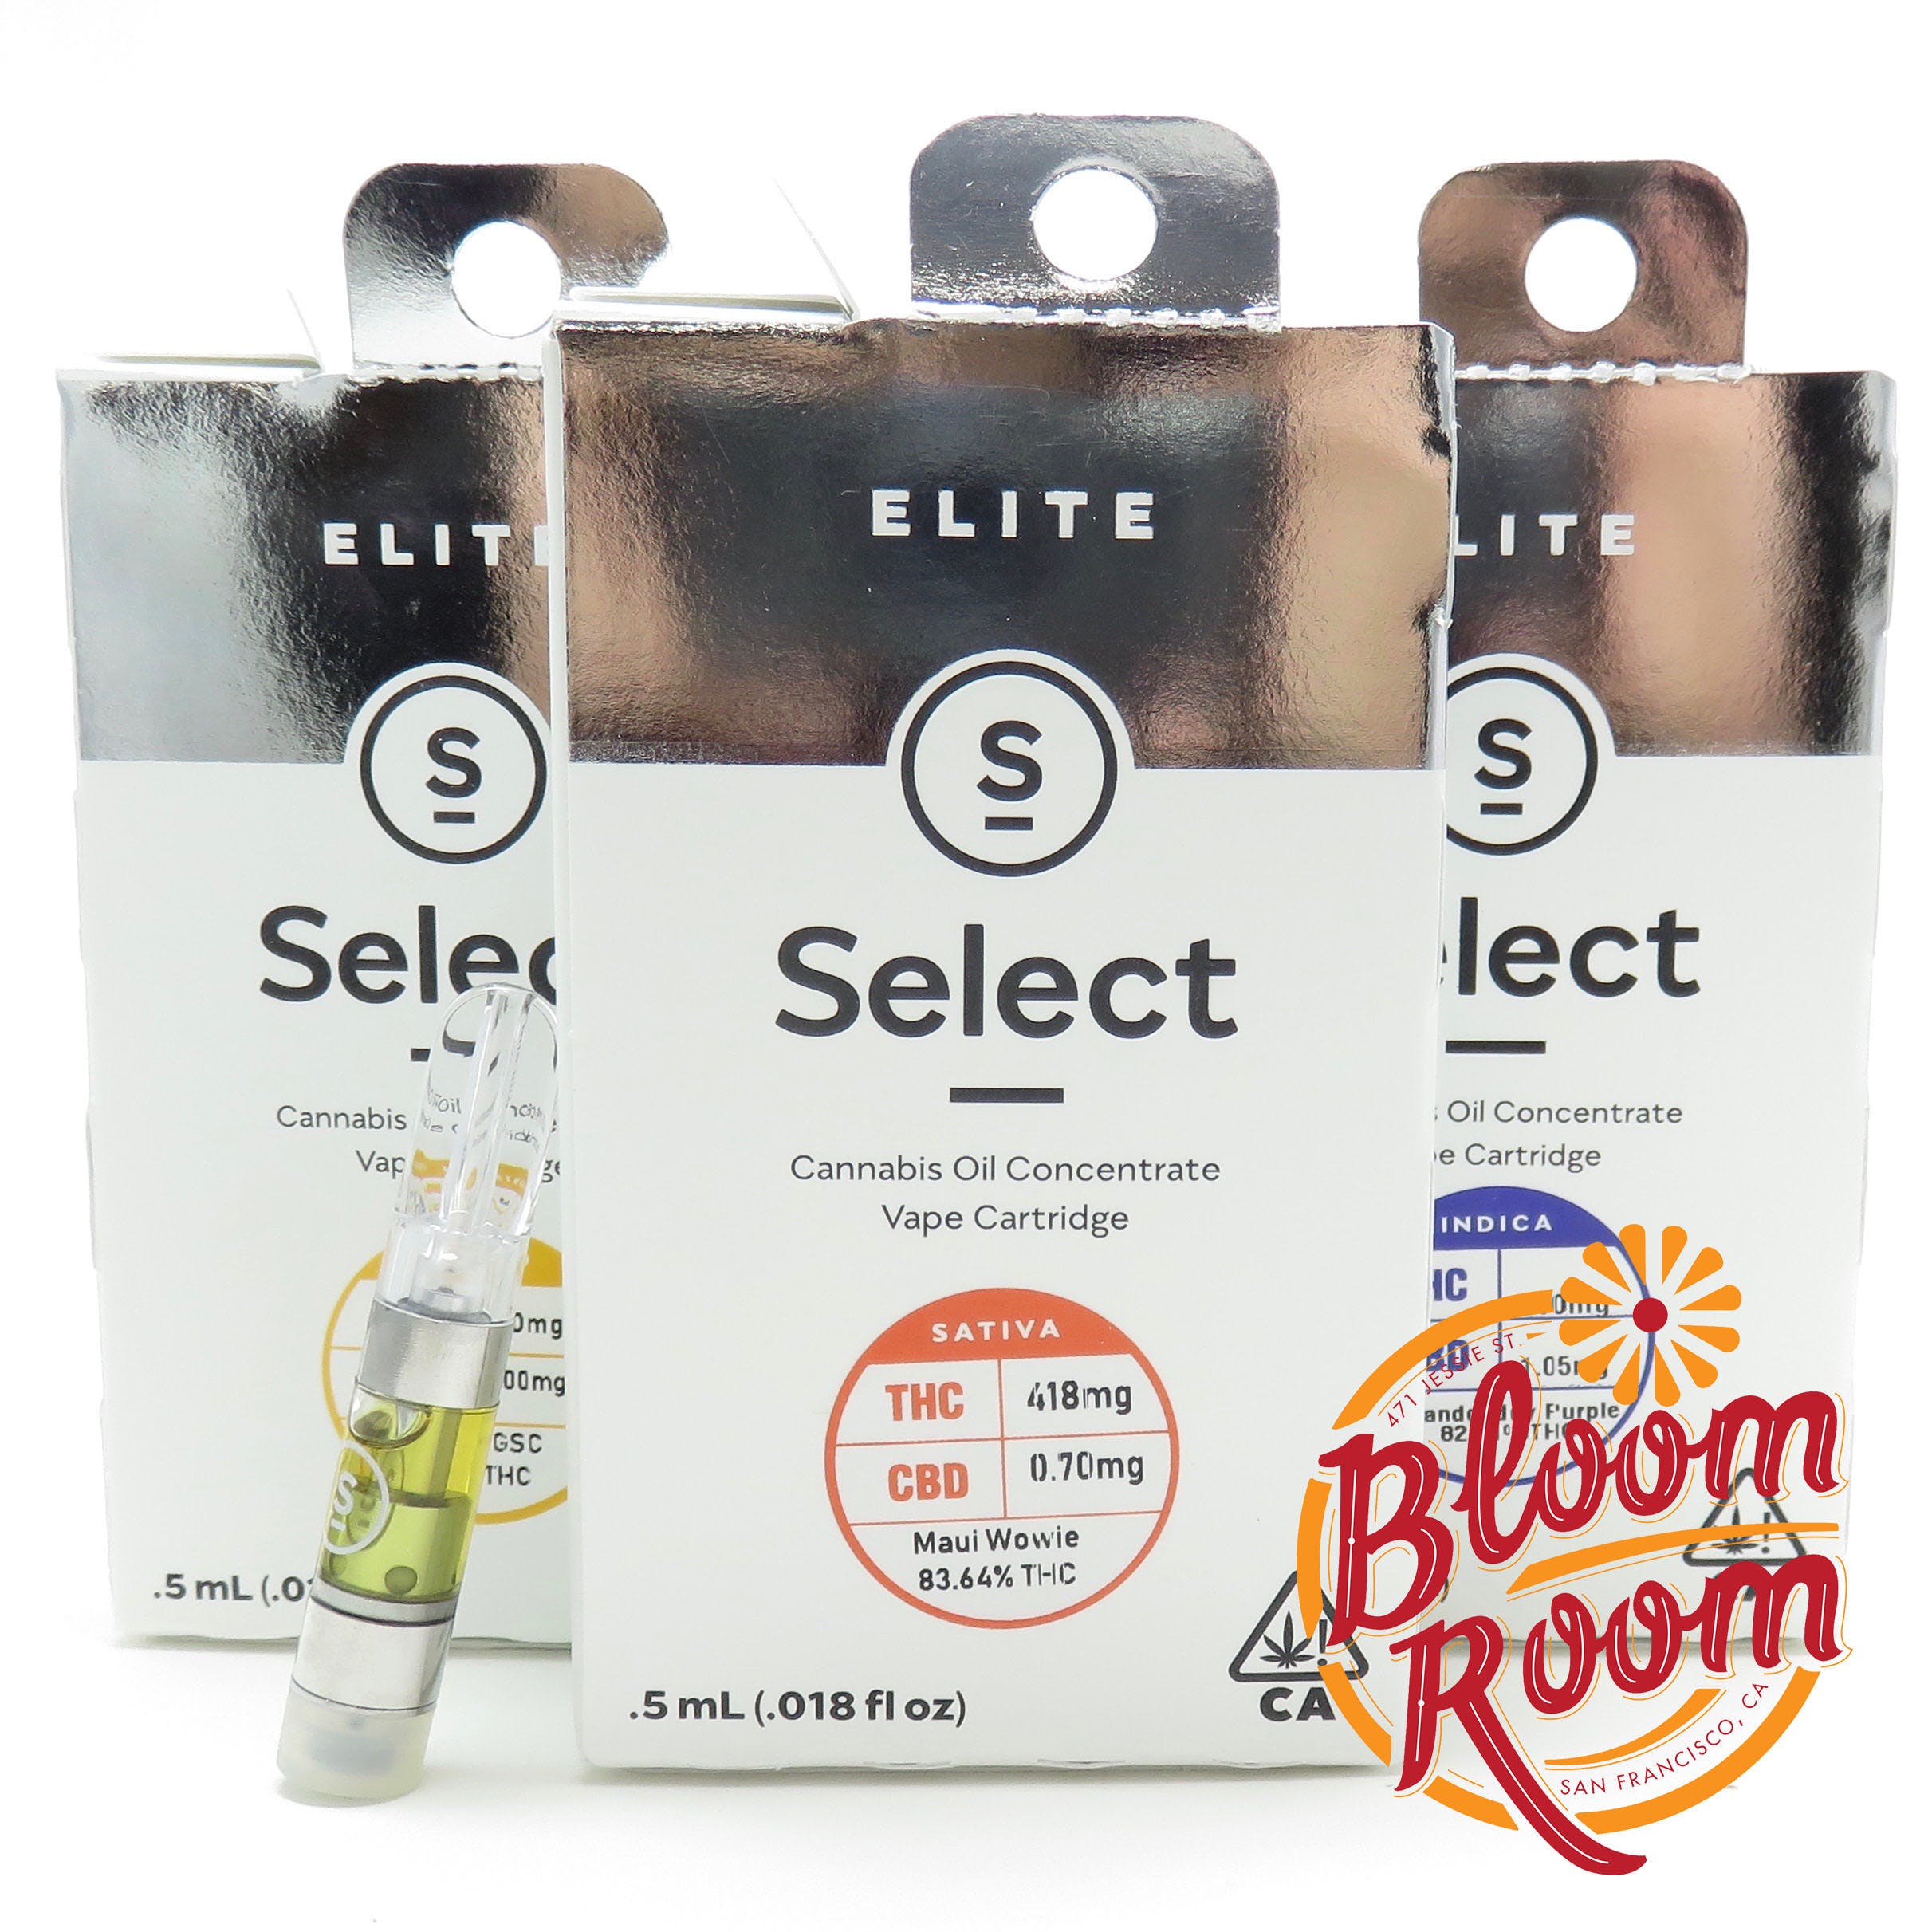 Select - Elite Cart - Super Lemon Haze